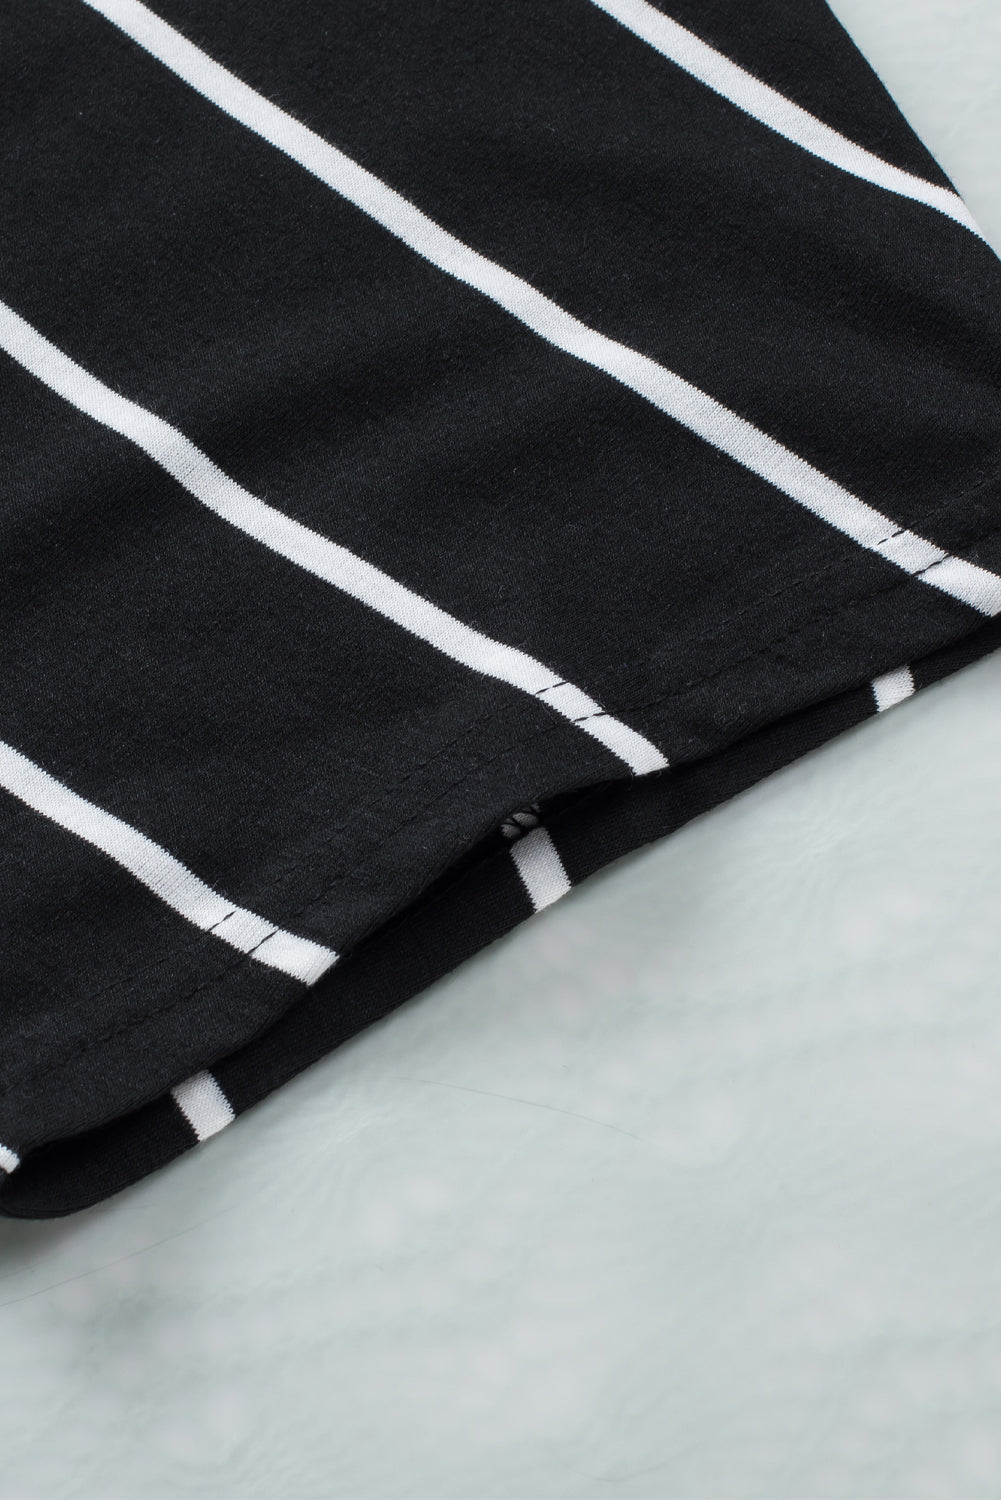 Schwarz gestreiftes, bedrucktes, kurzärmliges Tunika-Oberteil mit Seitentaschen